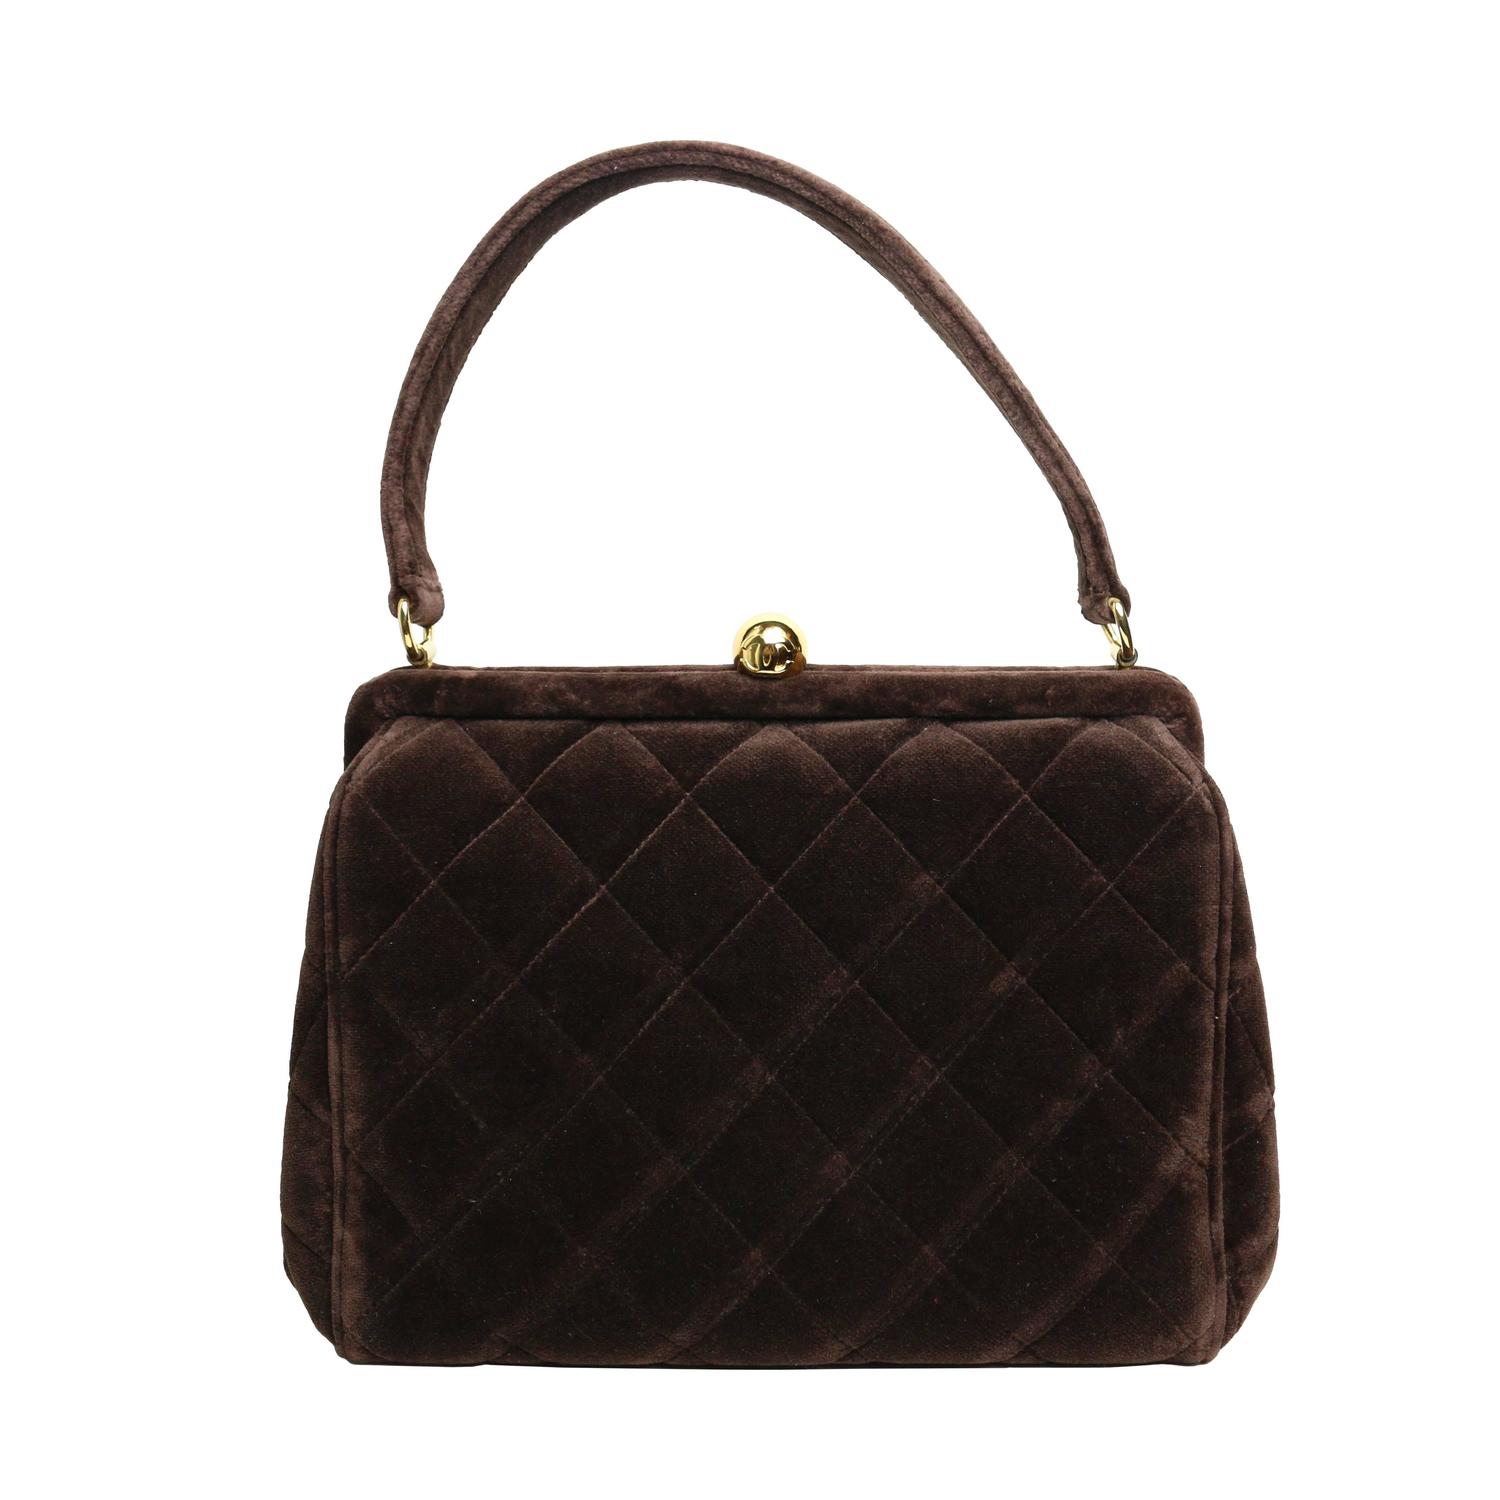 Chanel Brown Velvet Quilted Handbag For Sale at 1stdibs